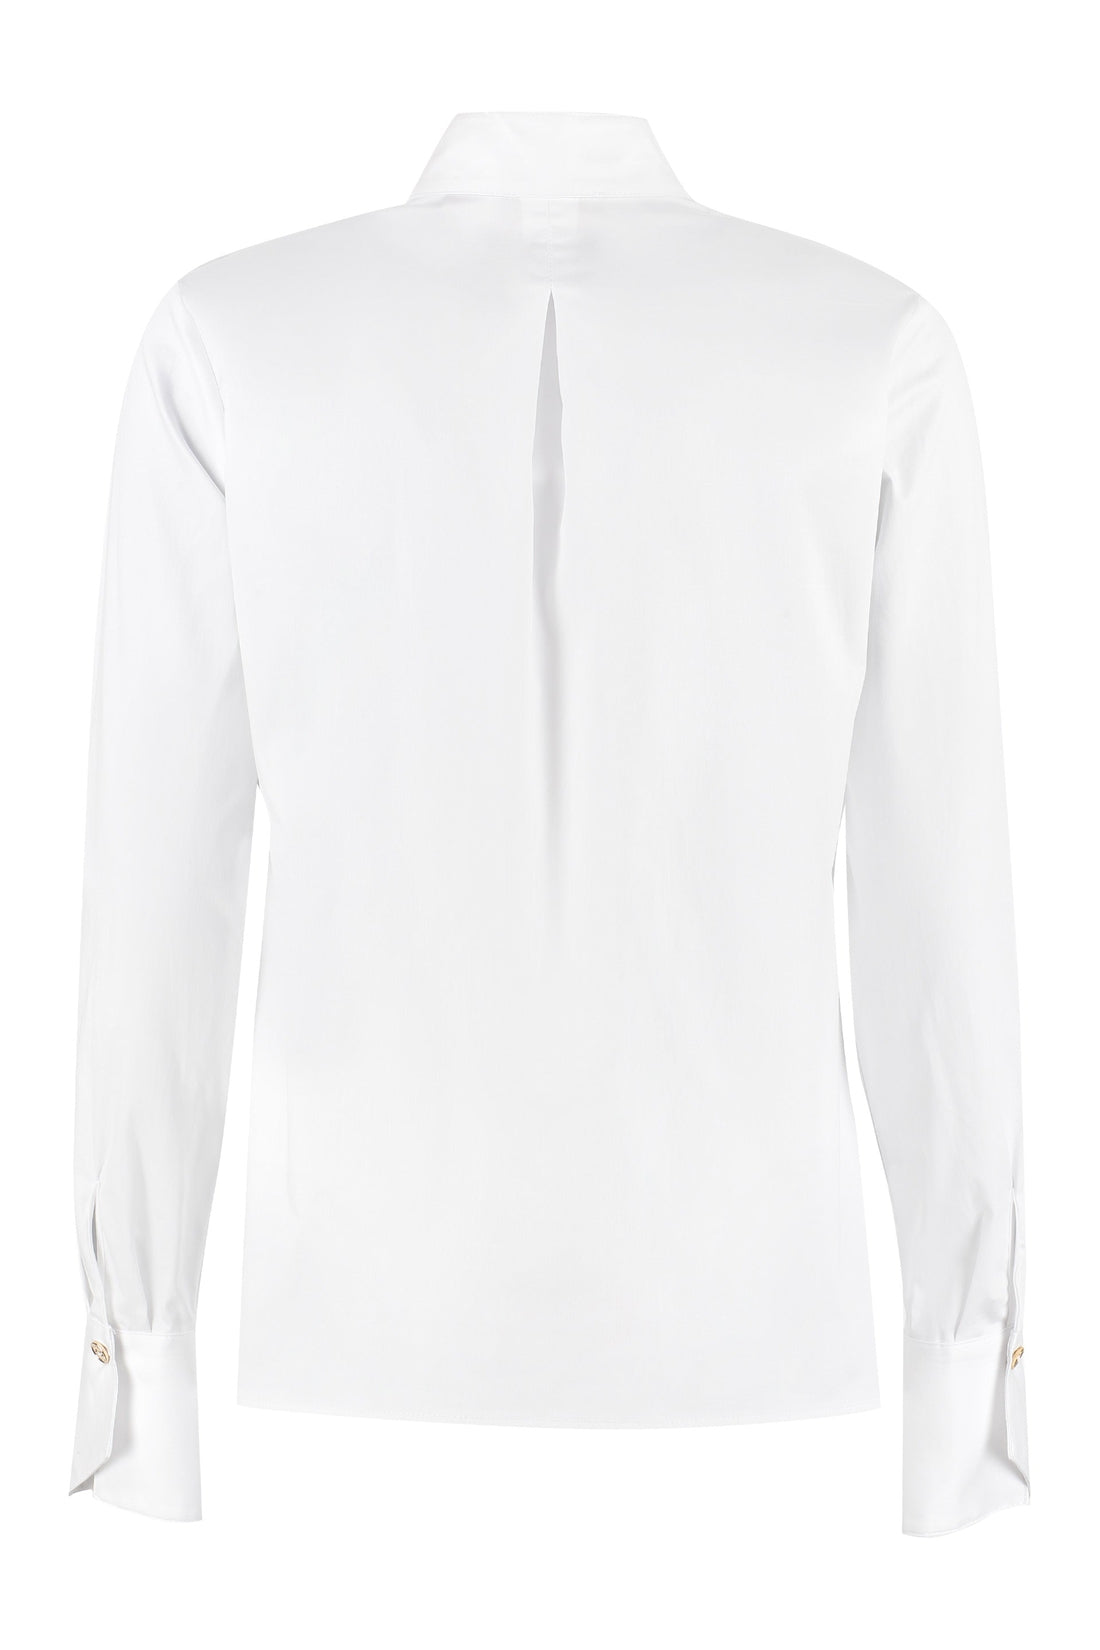 Elisabetta Franchi-OUTLET-SALE-Stretch cotton shirt-ARCHIVIST